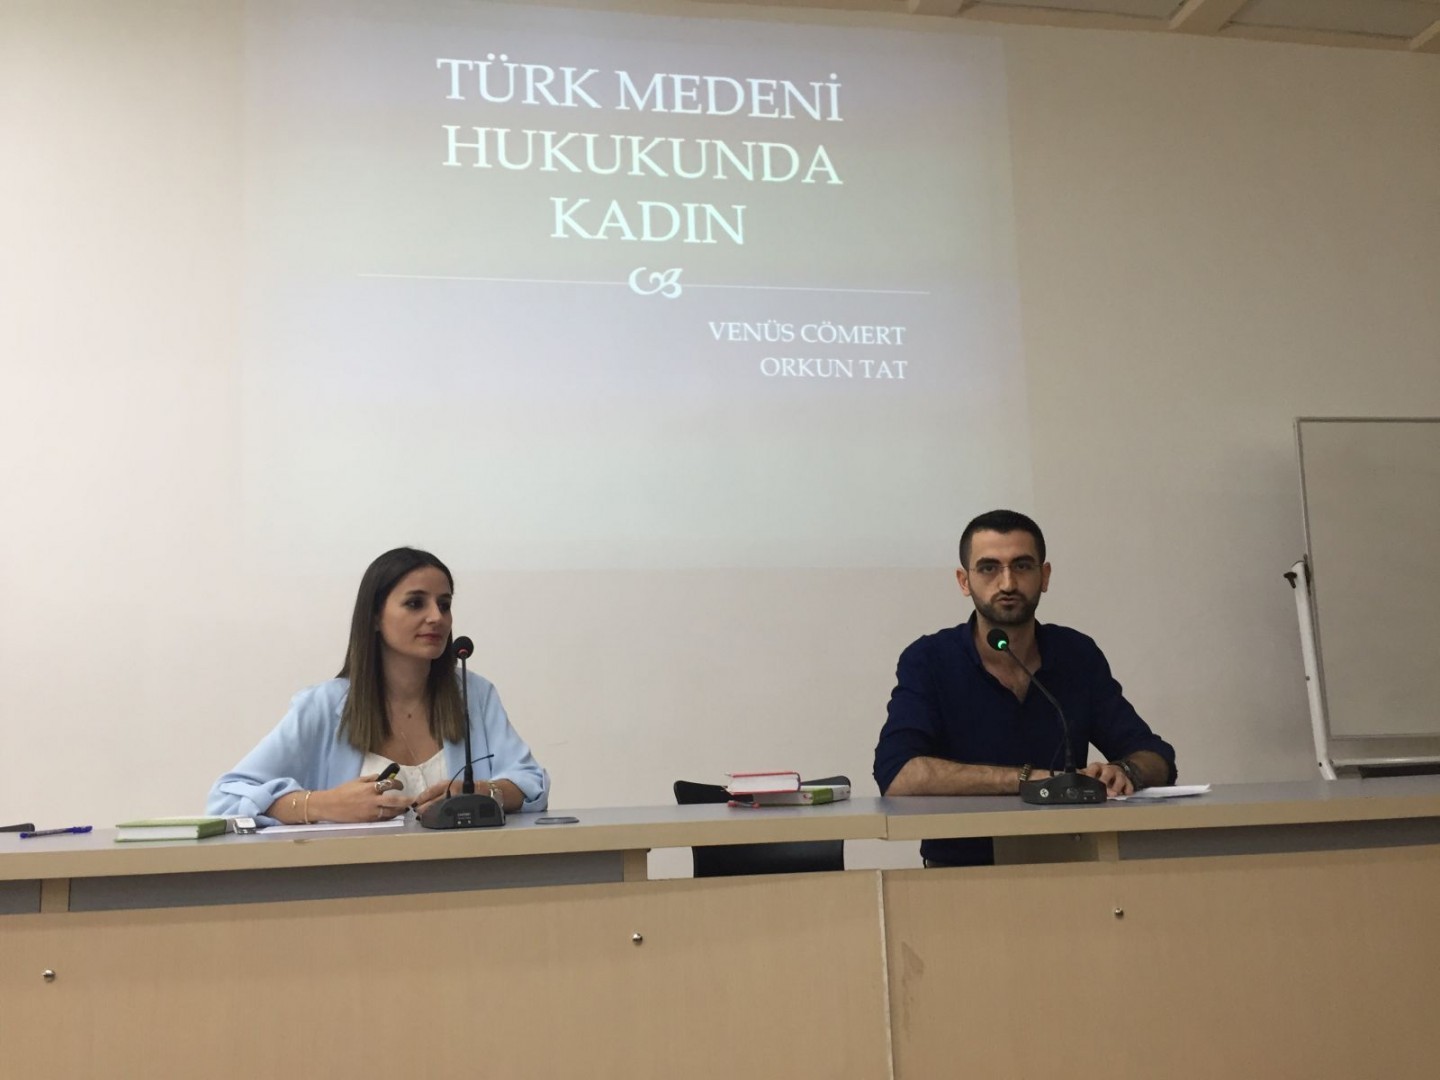 Öğretim Görevlilerimiz Venüs Cömert ve Orkun Tat "Türk Medeni Kanununda Kadın" başlıklı panele konuşmacı olarak katıldılar.